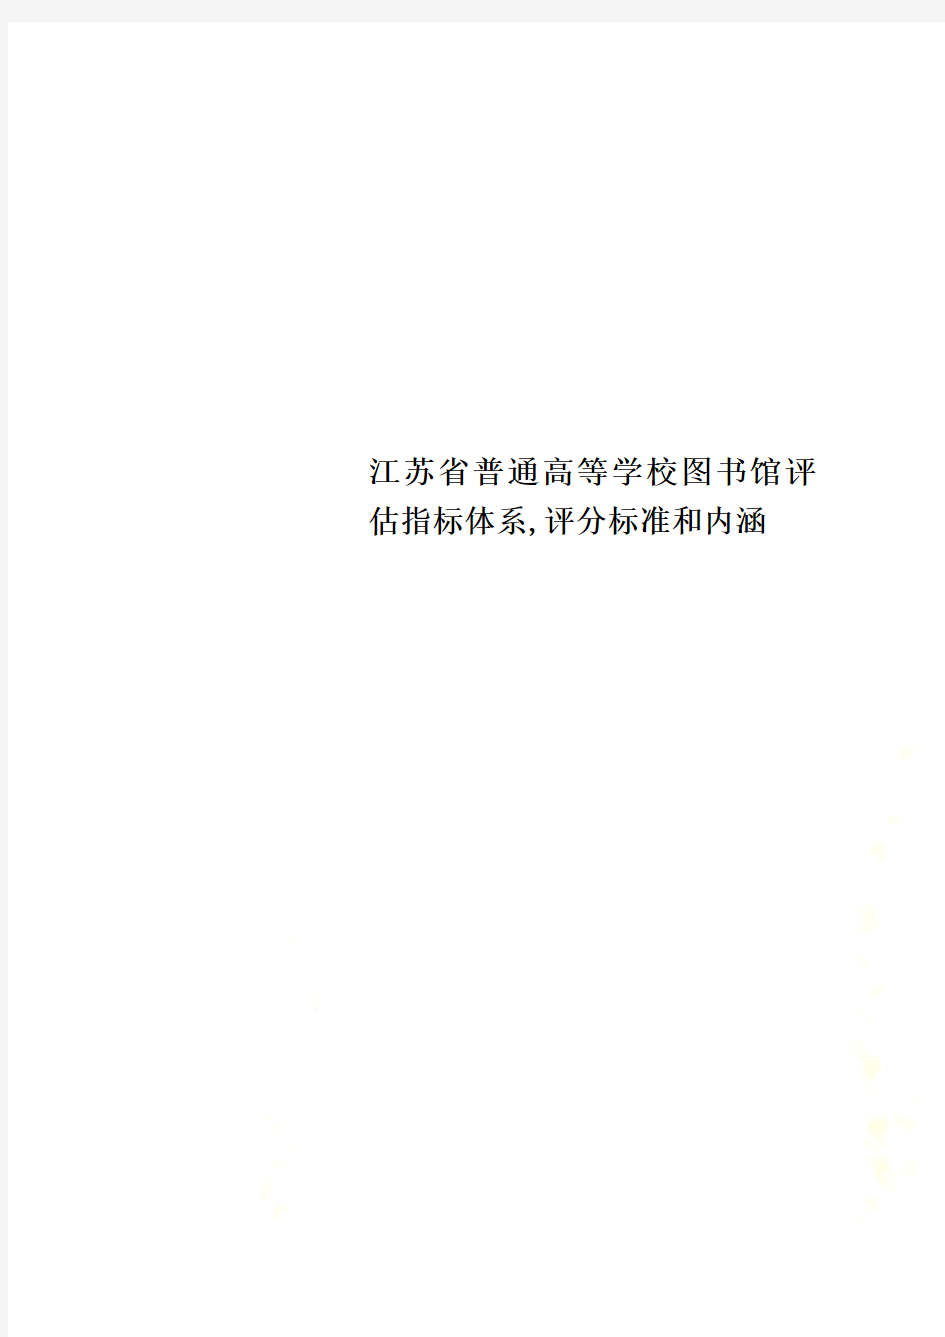 江苏省普通高等学校图书馆评估指标体系,评分标准和内涵